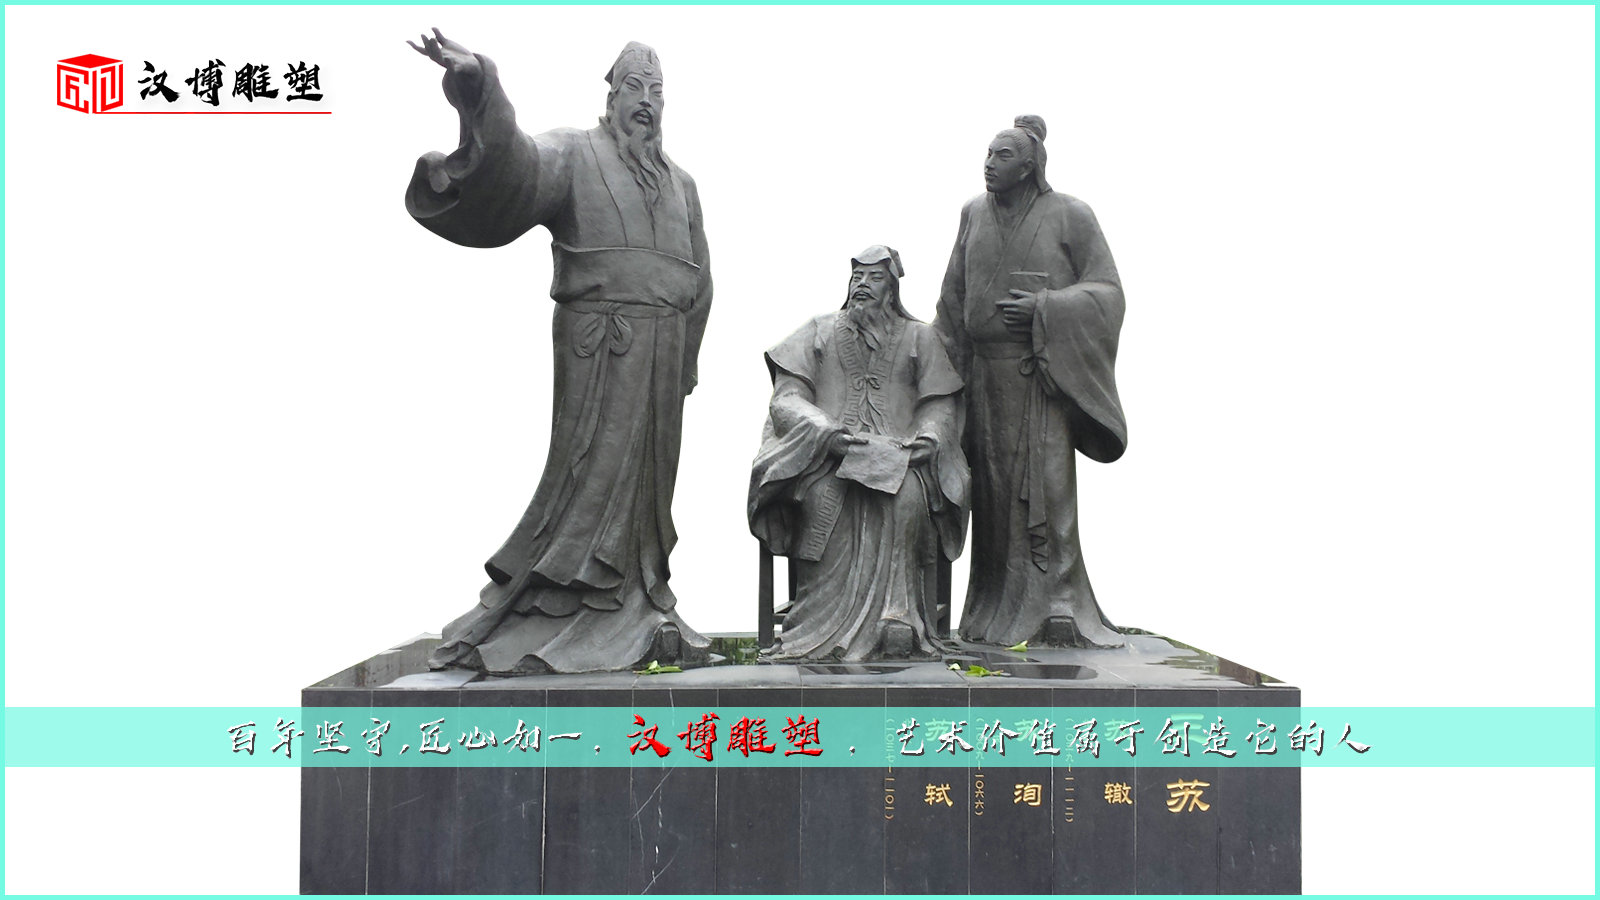 历史名人雕塑,三苏人物雕像,景观铜雕